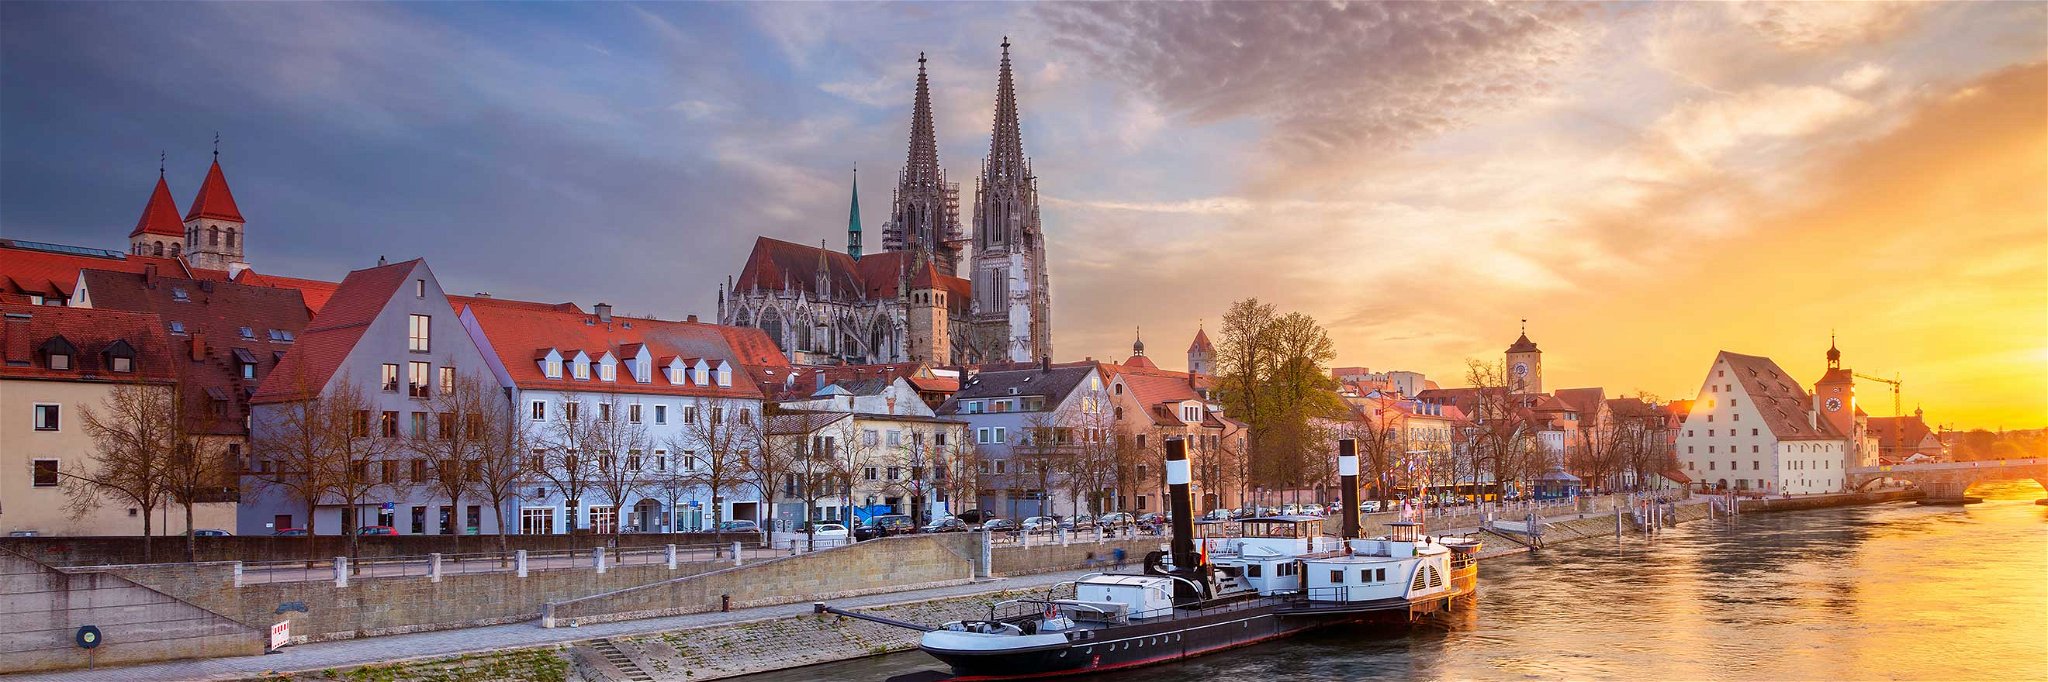 Regensburg ist eine der zehn gastfreudlichsten Städte Deutschlands.